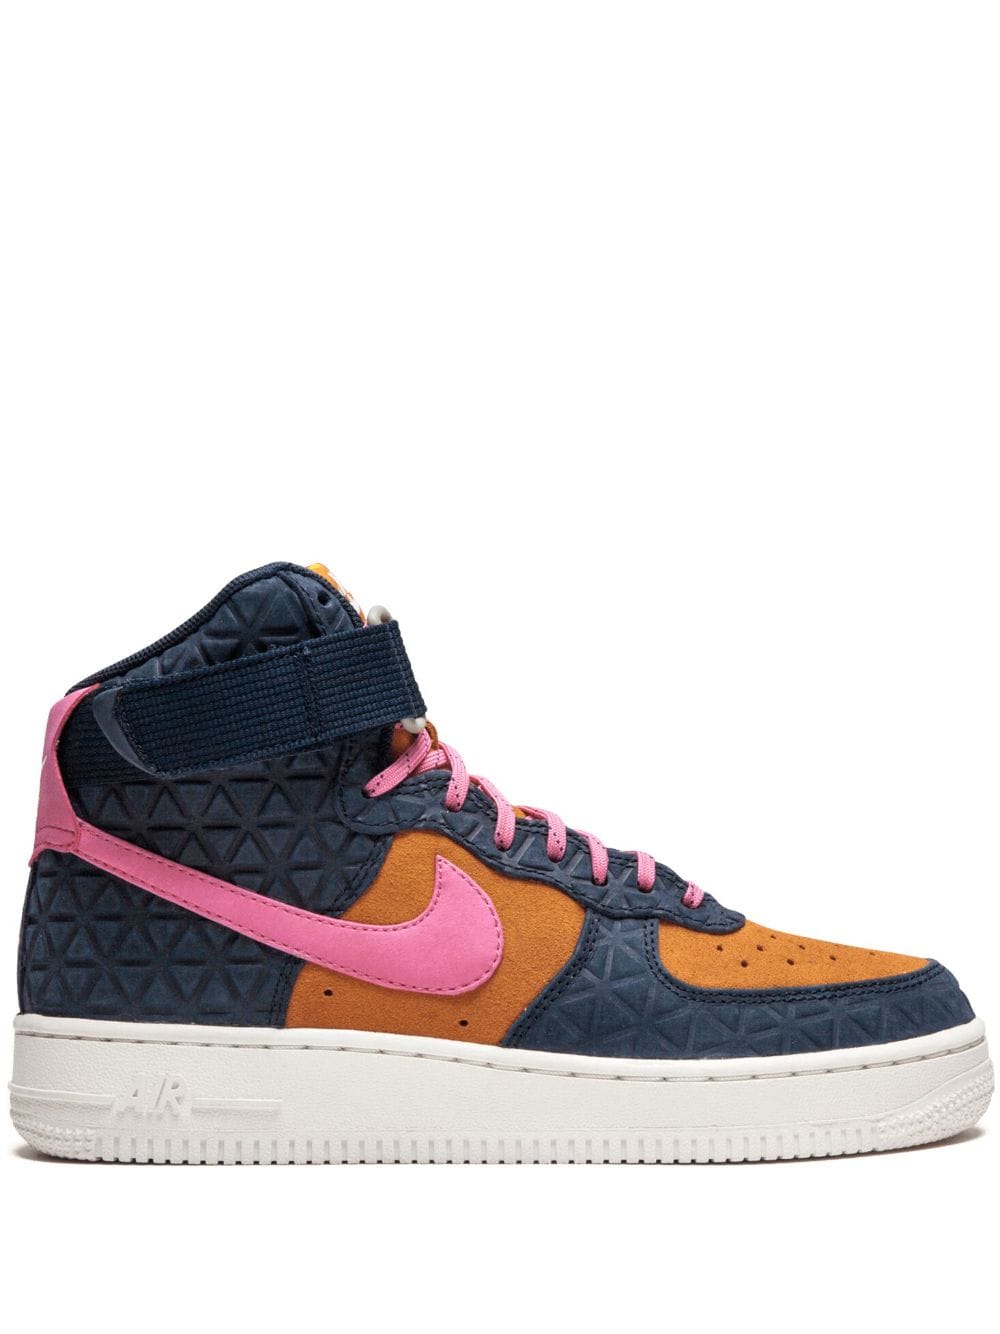 Nike Air Force 1 HI PRM Suede "Dynamic Pink" sneakers - Blue von Nike